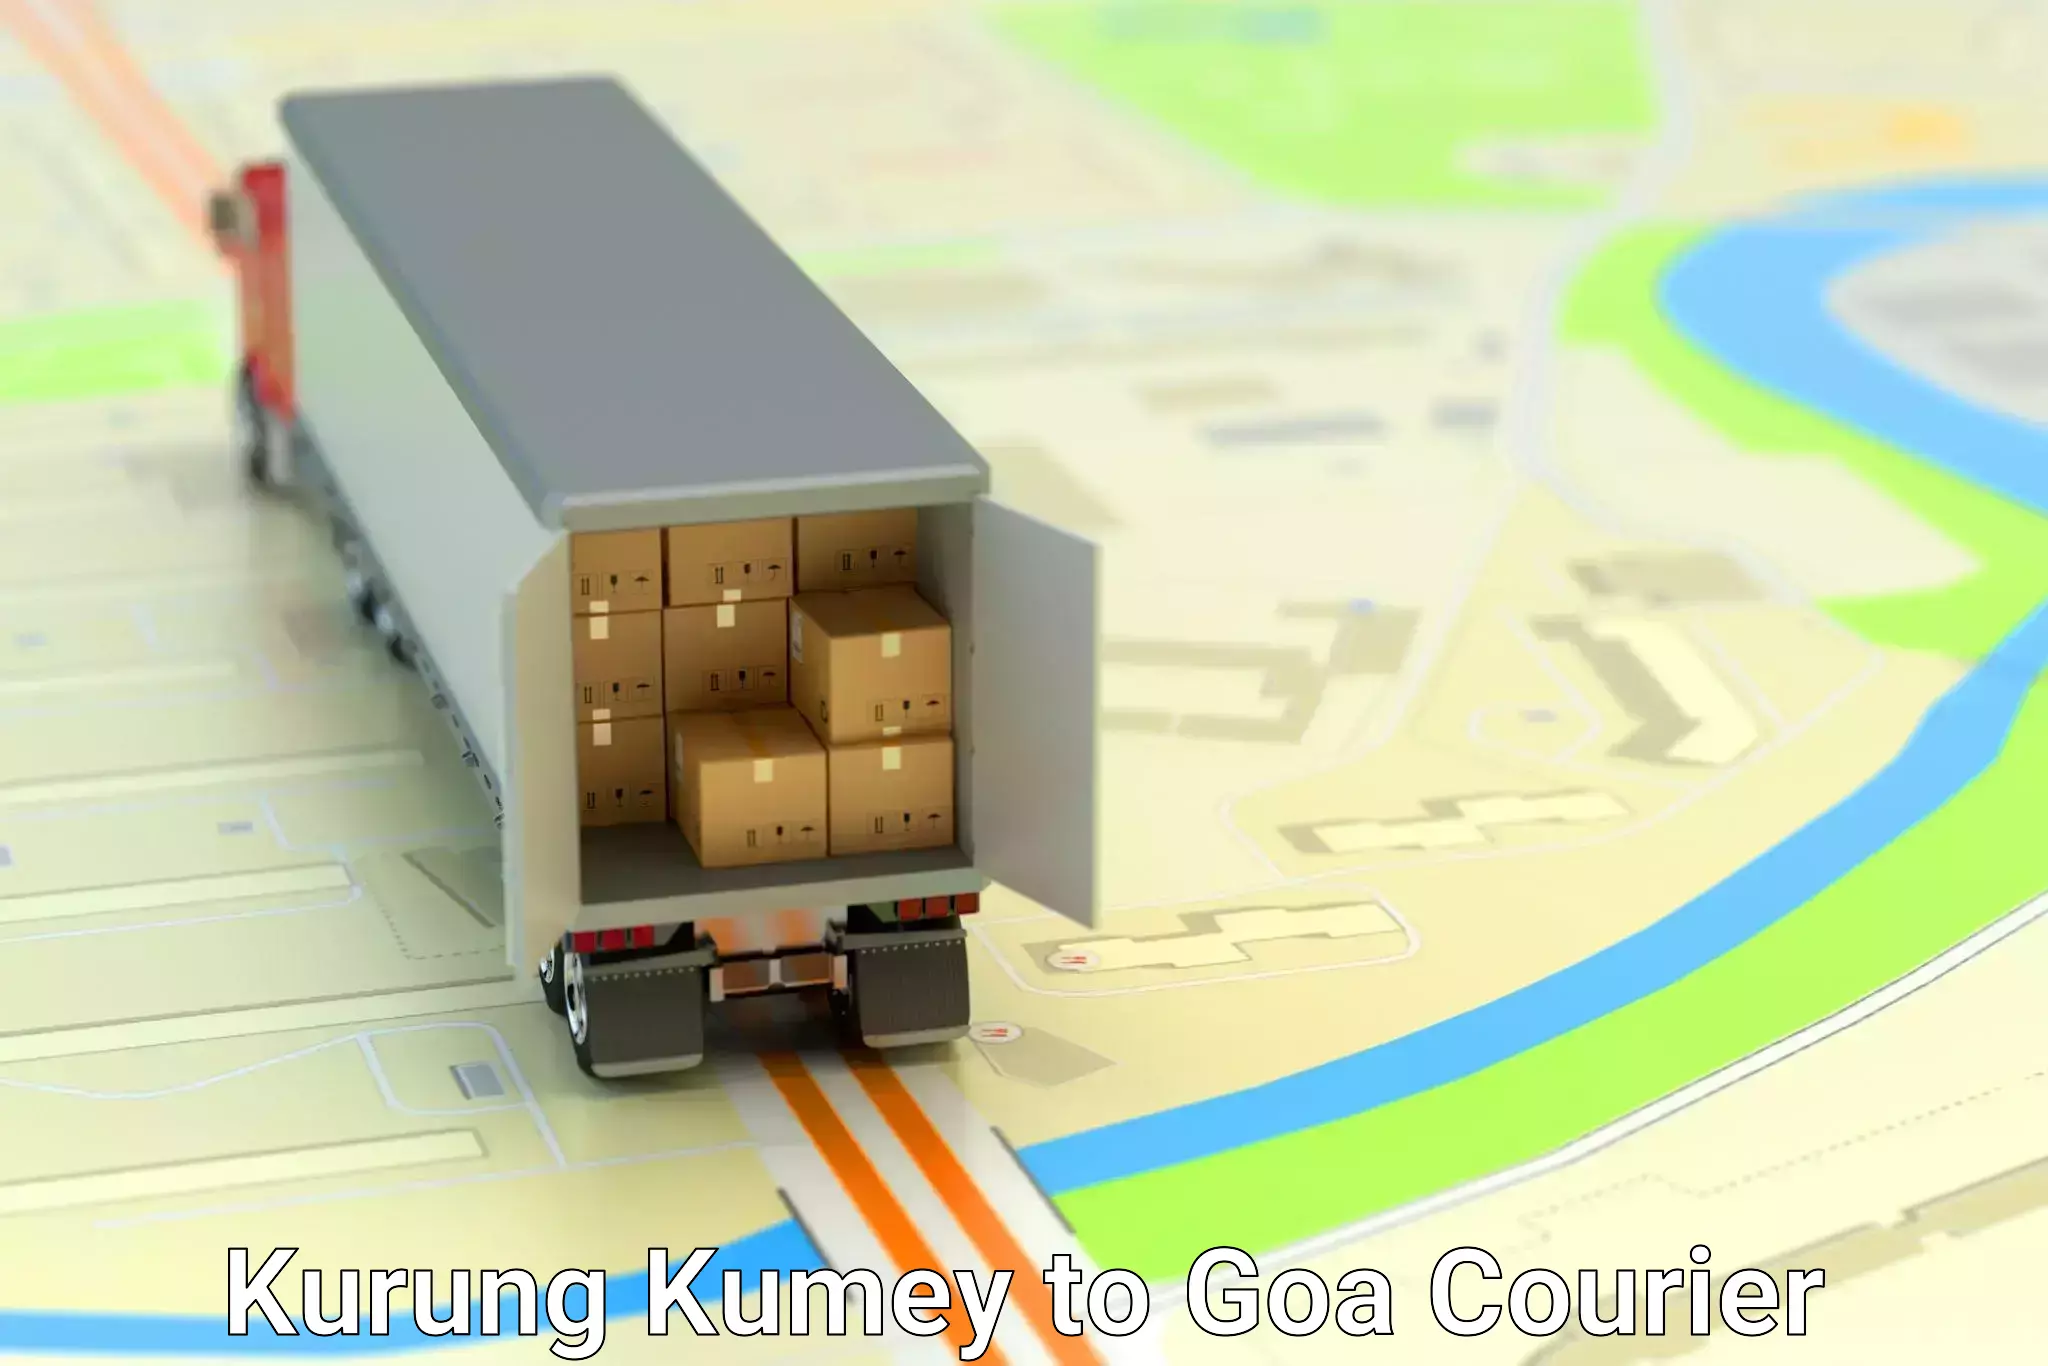 International courier networks Kurung Kumey to Vasco da Gama